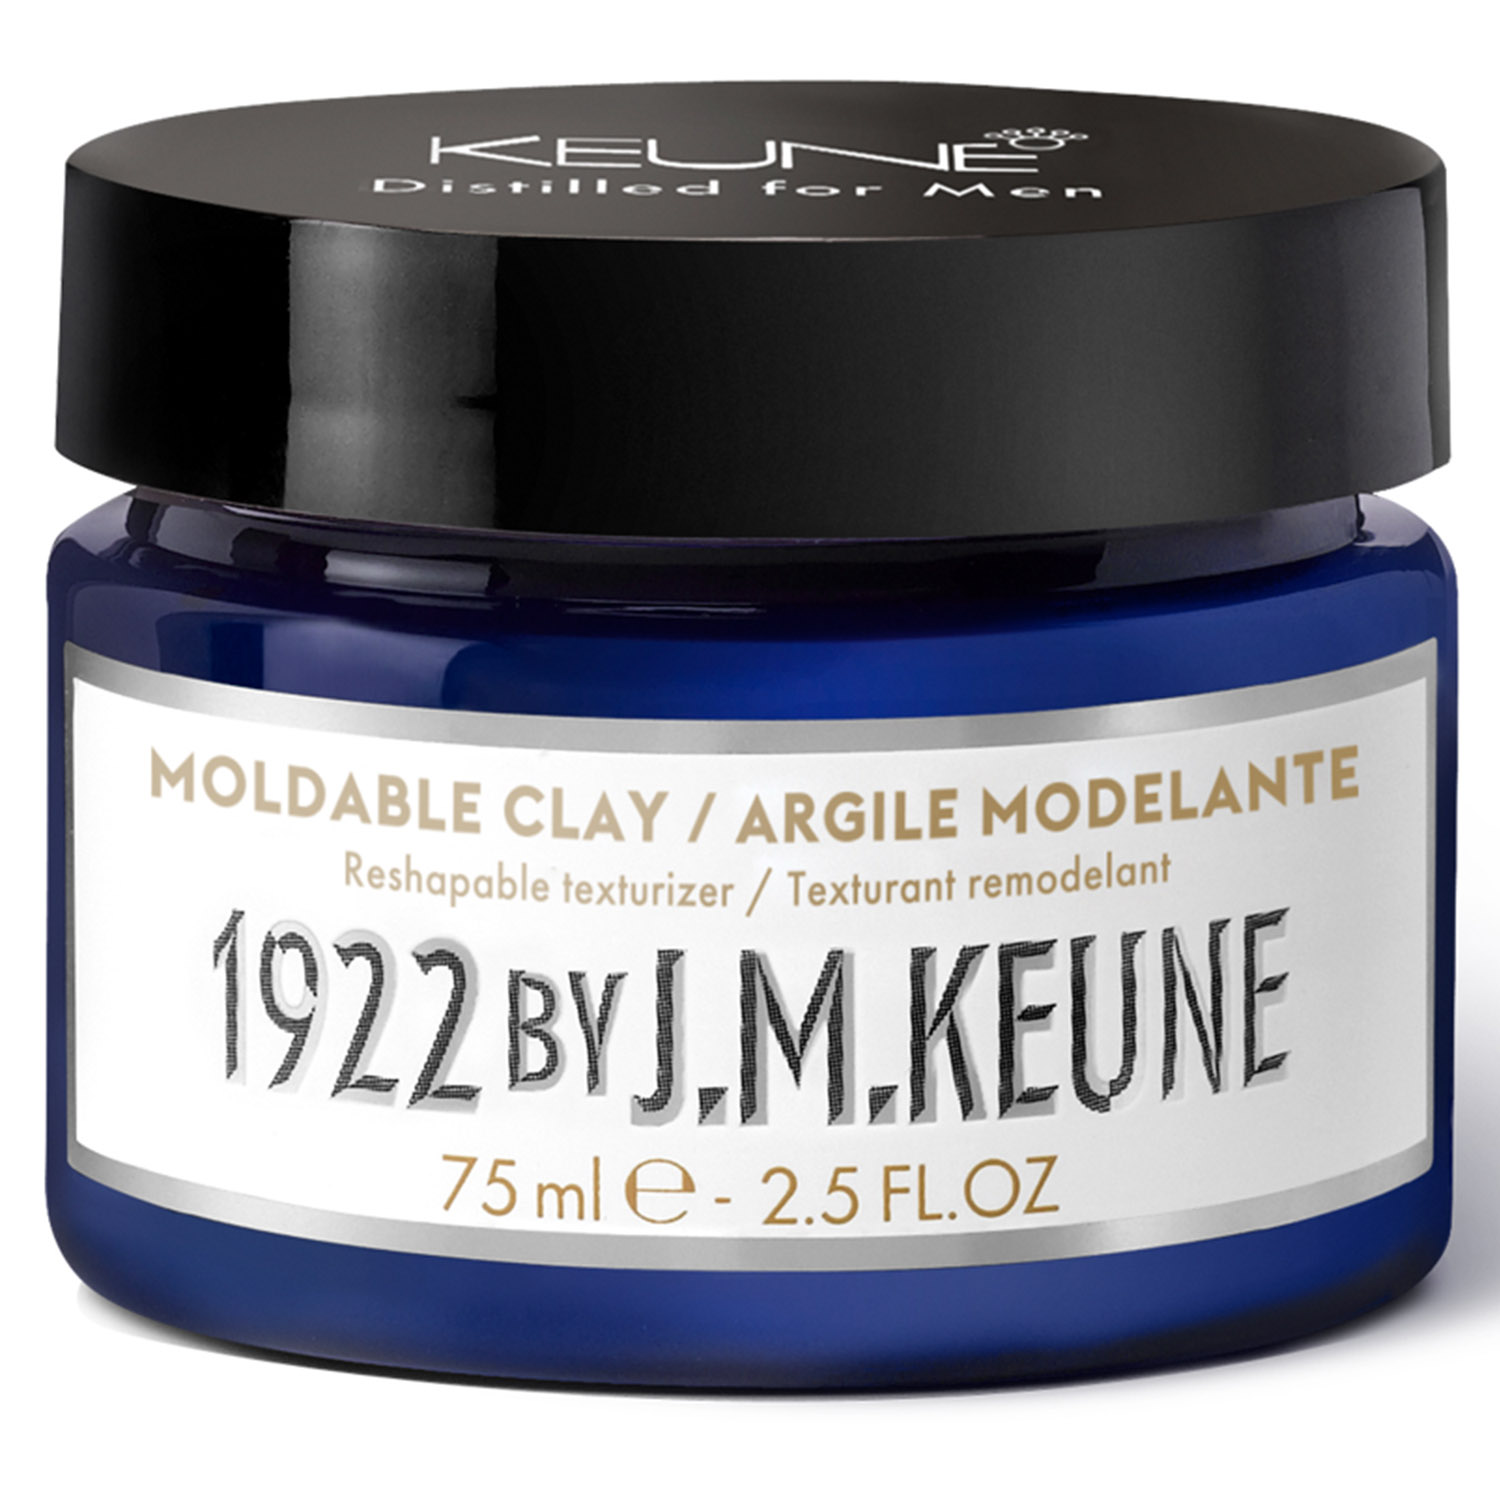 Keune Моделирующая глина для укладки волос Moldable Clay, 75 мл (Keune, 1922 by J.M. Keune) глина для укладки волос keune премиум глина 1922